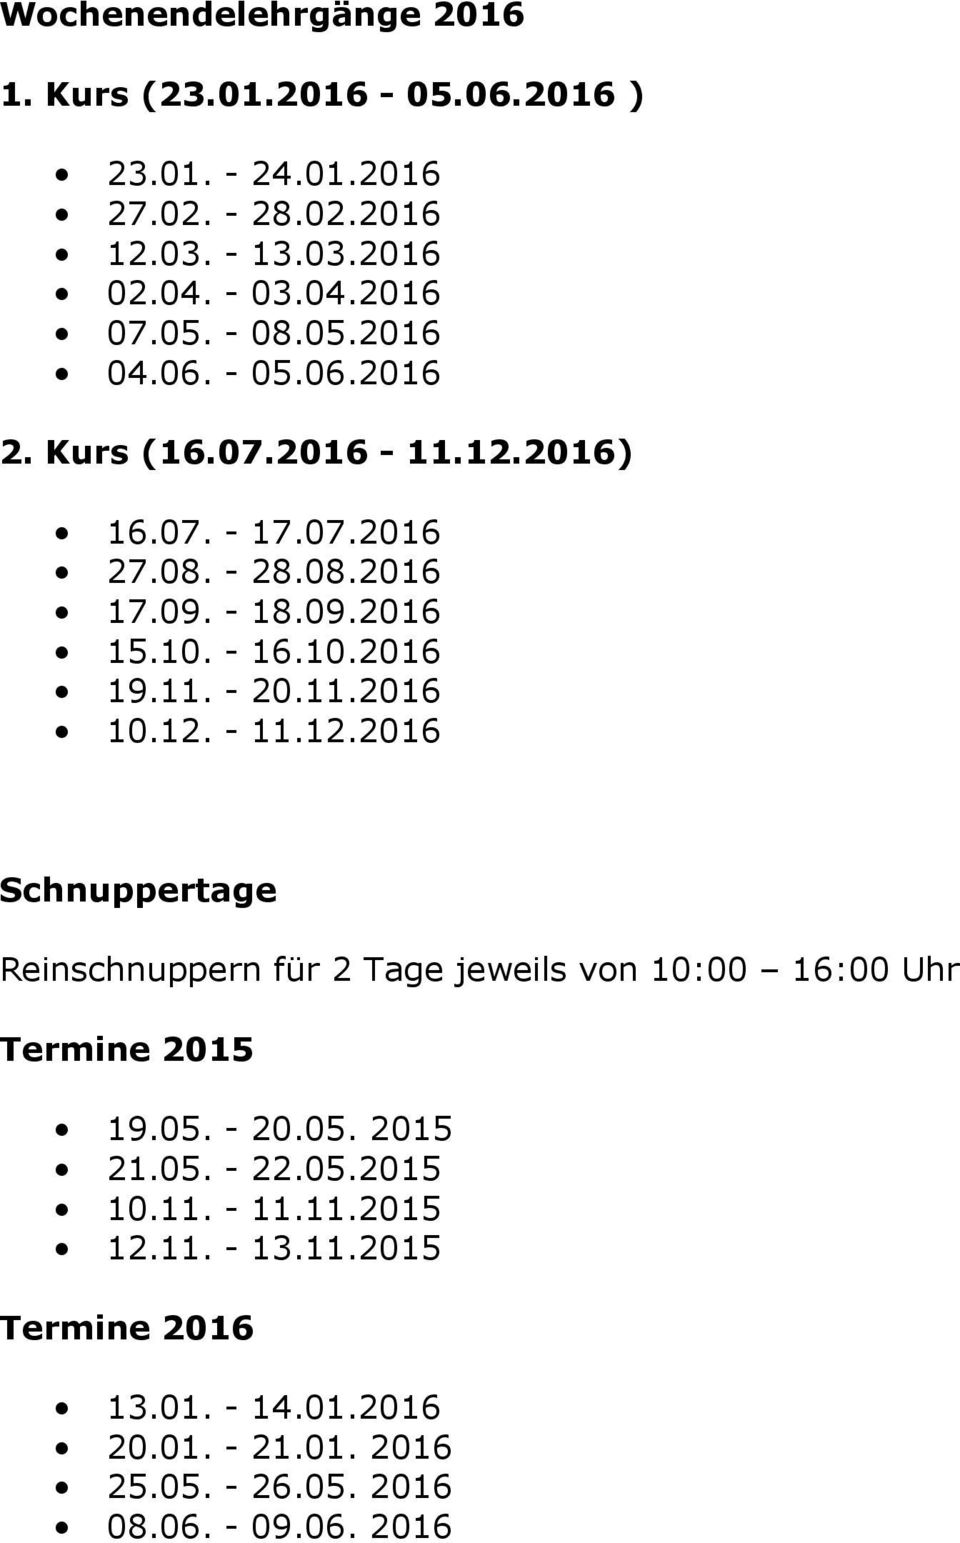 11.2016 10.12. - 11.12.2016 Schnuppertage Reinschnuppern für 2 Tage jeweils von 10:00 16:00 Uhr Termine 2015 19.05. - 20.05. 2015 21.05. - 22.05.2015 10.